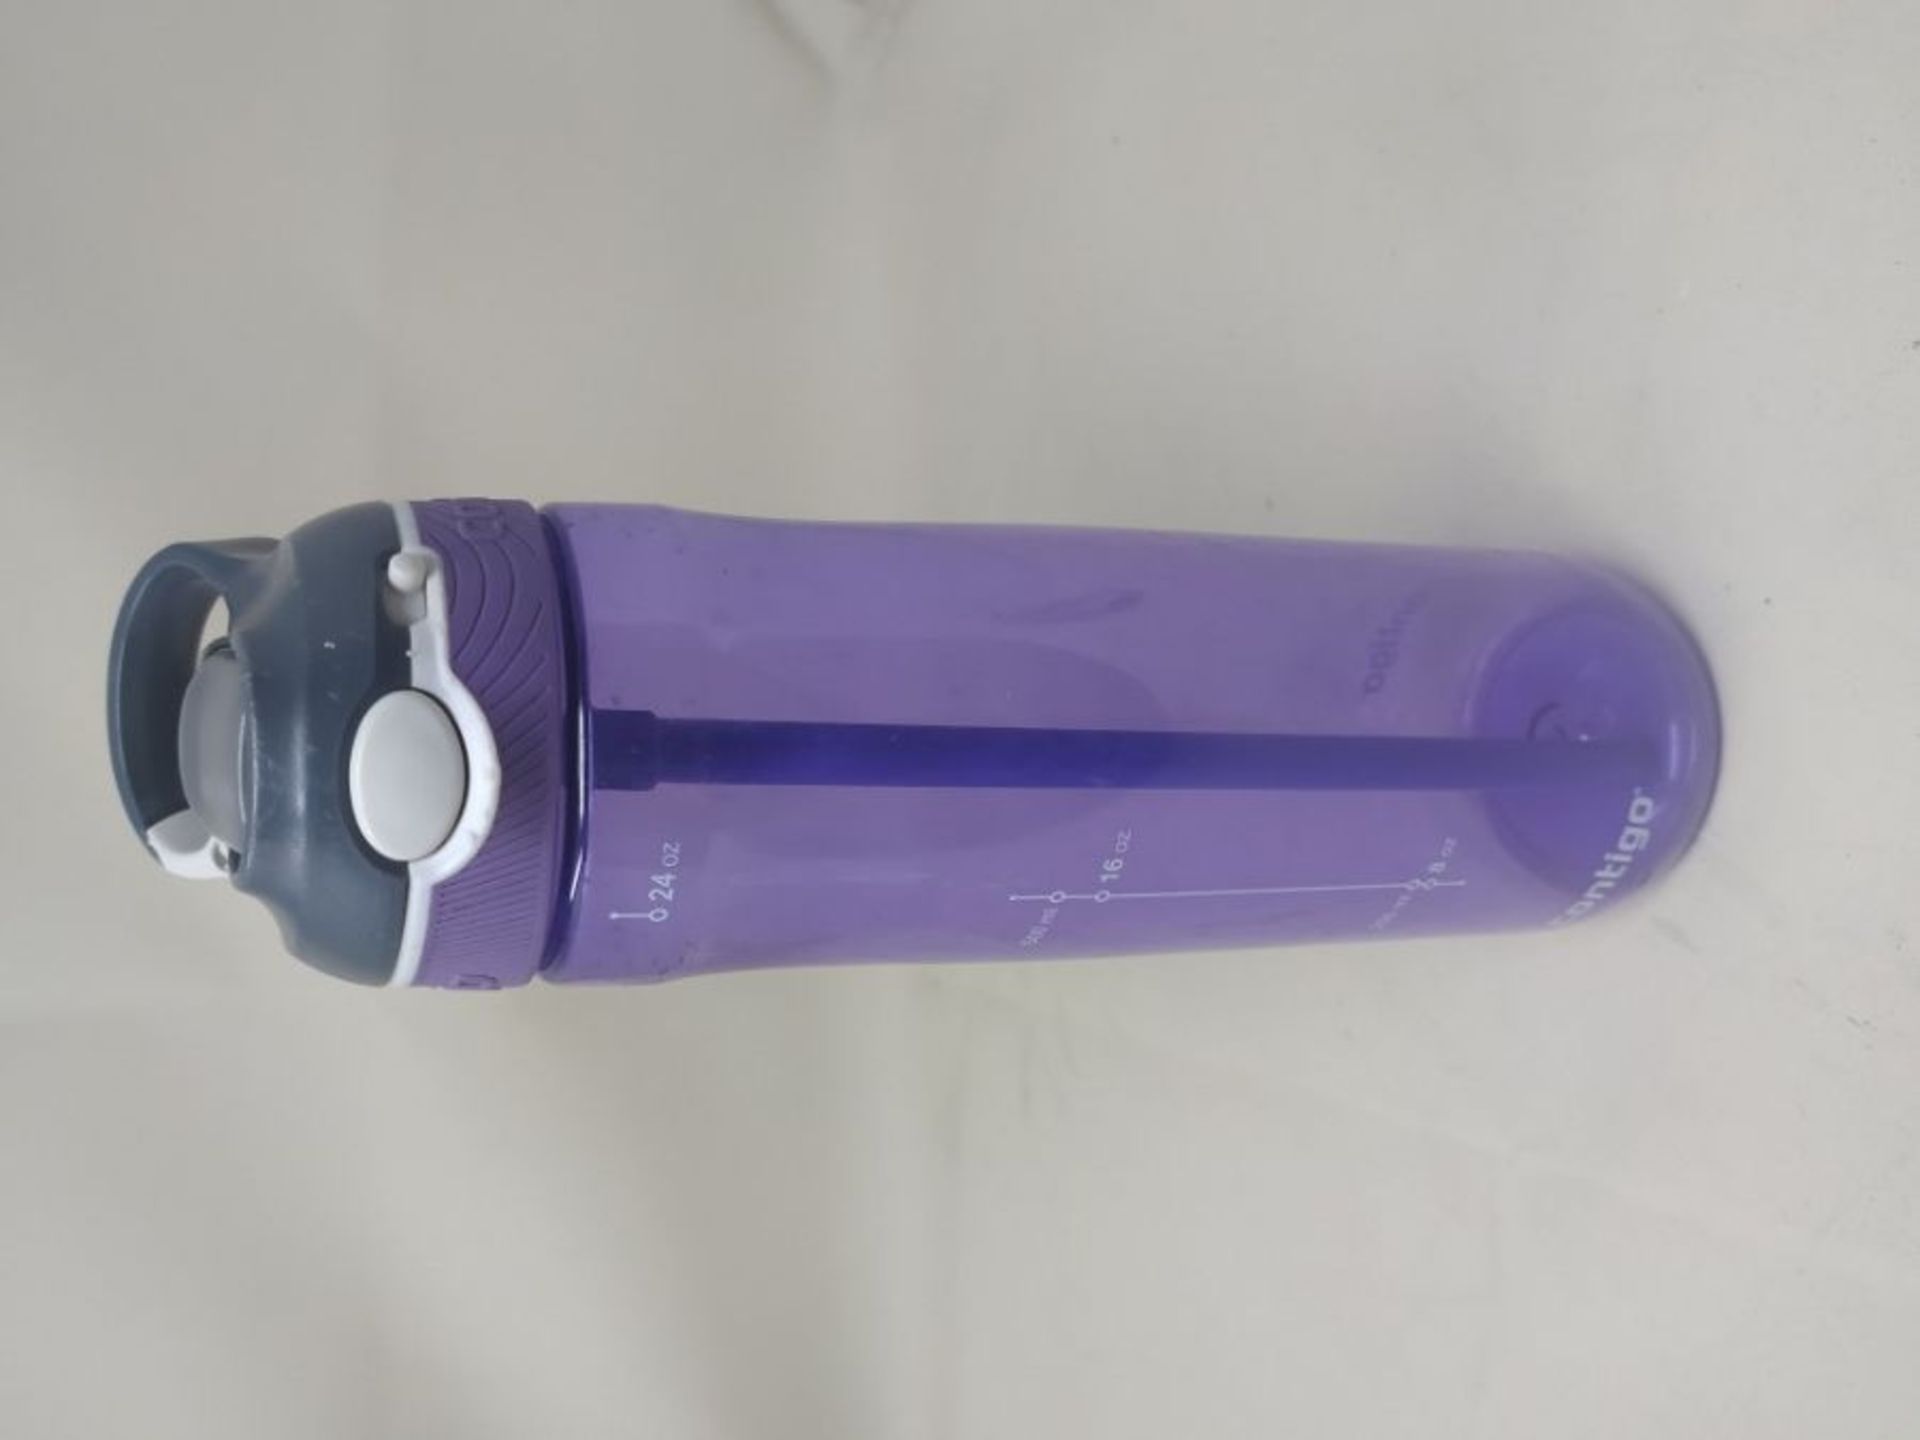 Contigo Ashland Autospout Water Bottle with Flip Straw, Large BPA Free Drinking Bottle - Image 2 of 2